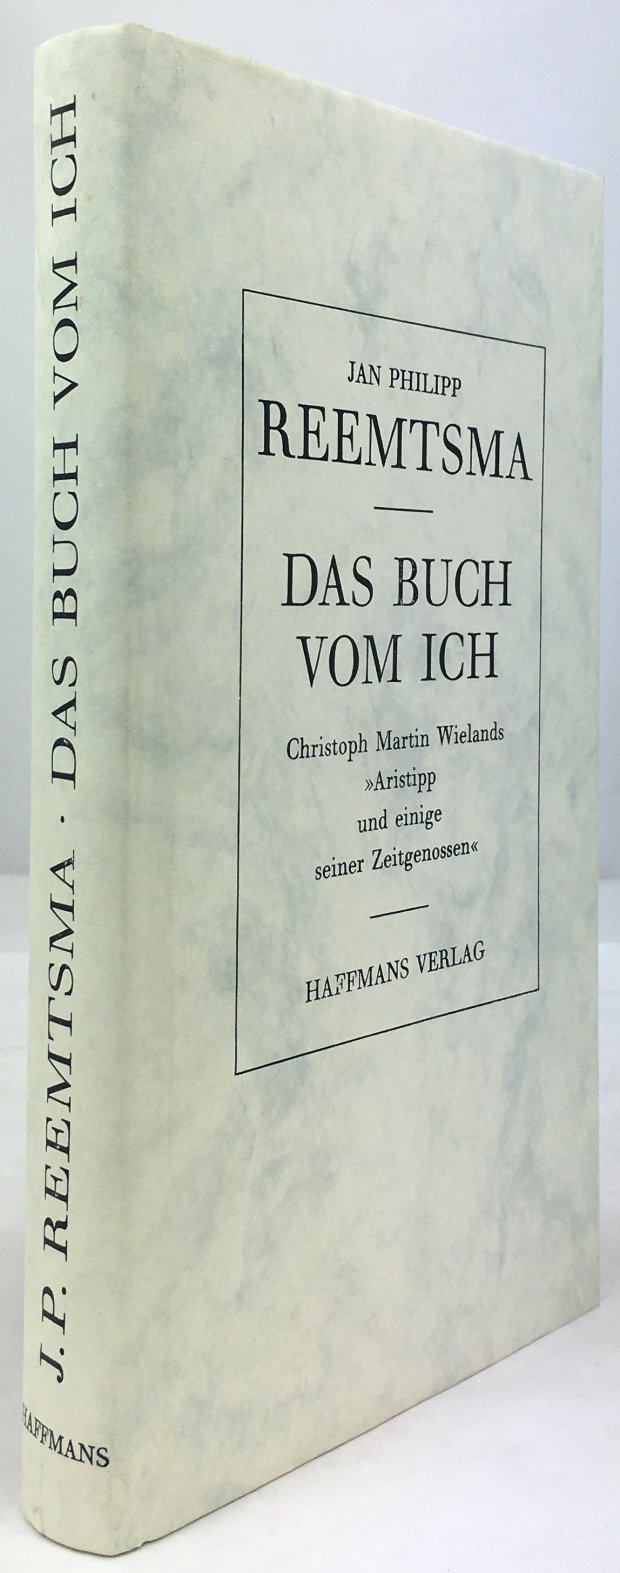 Abbildung von "Das Buch vom Ich. Christoph Martin Wielands "Aristipp und einige seiner Zeitgenossen"."